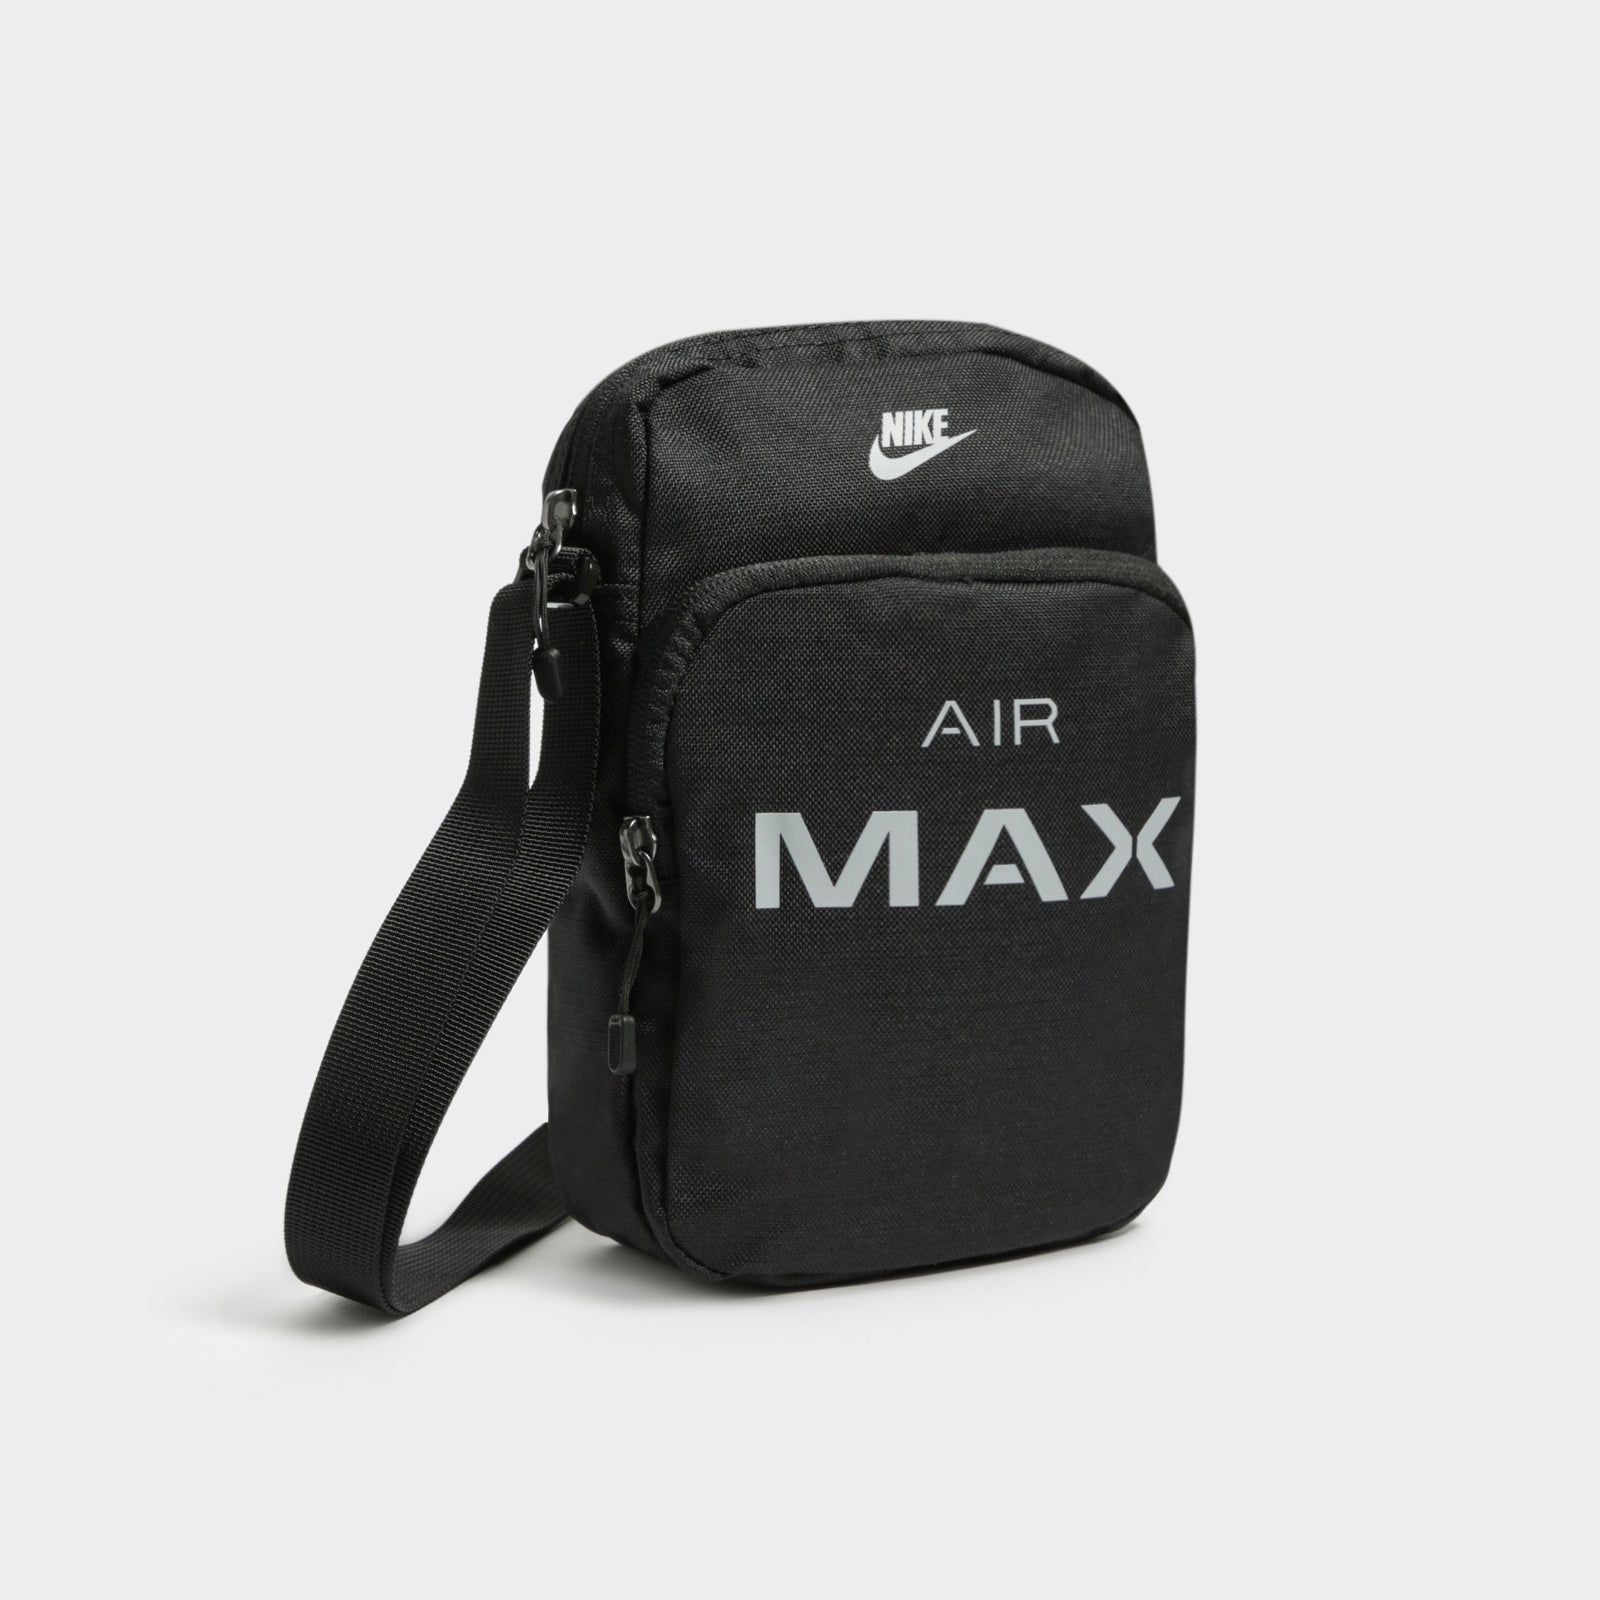 air max small items bag